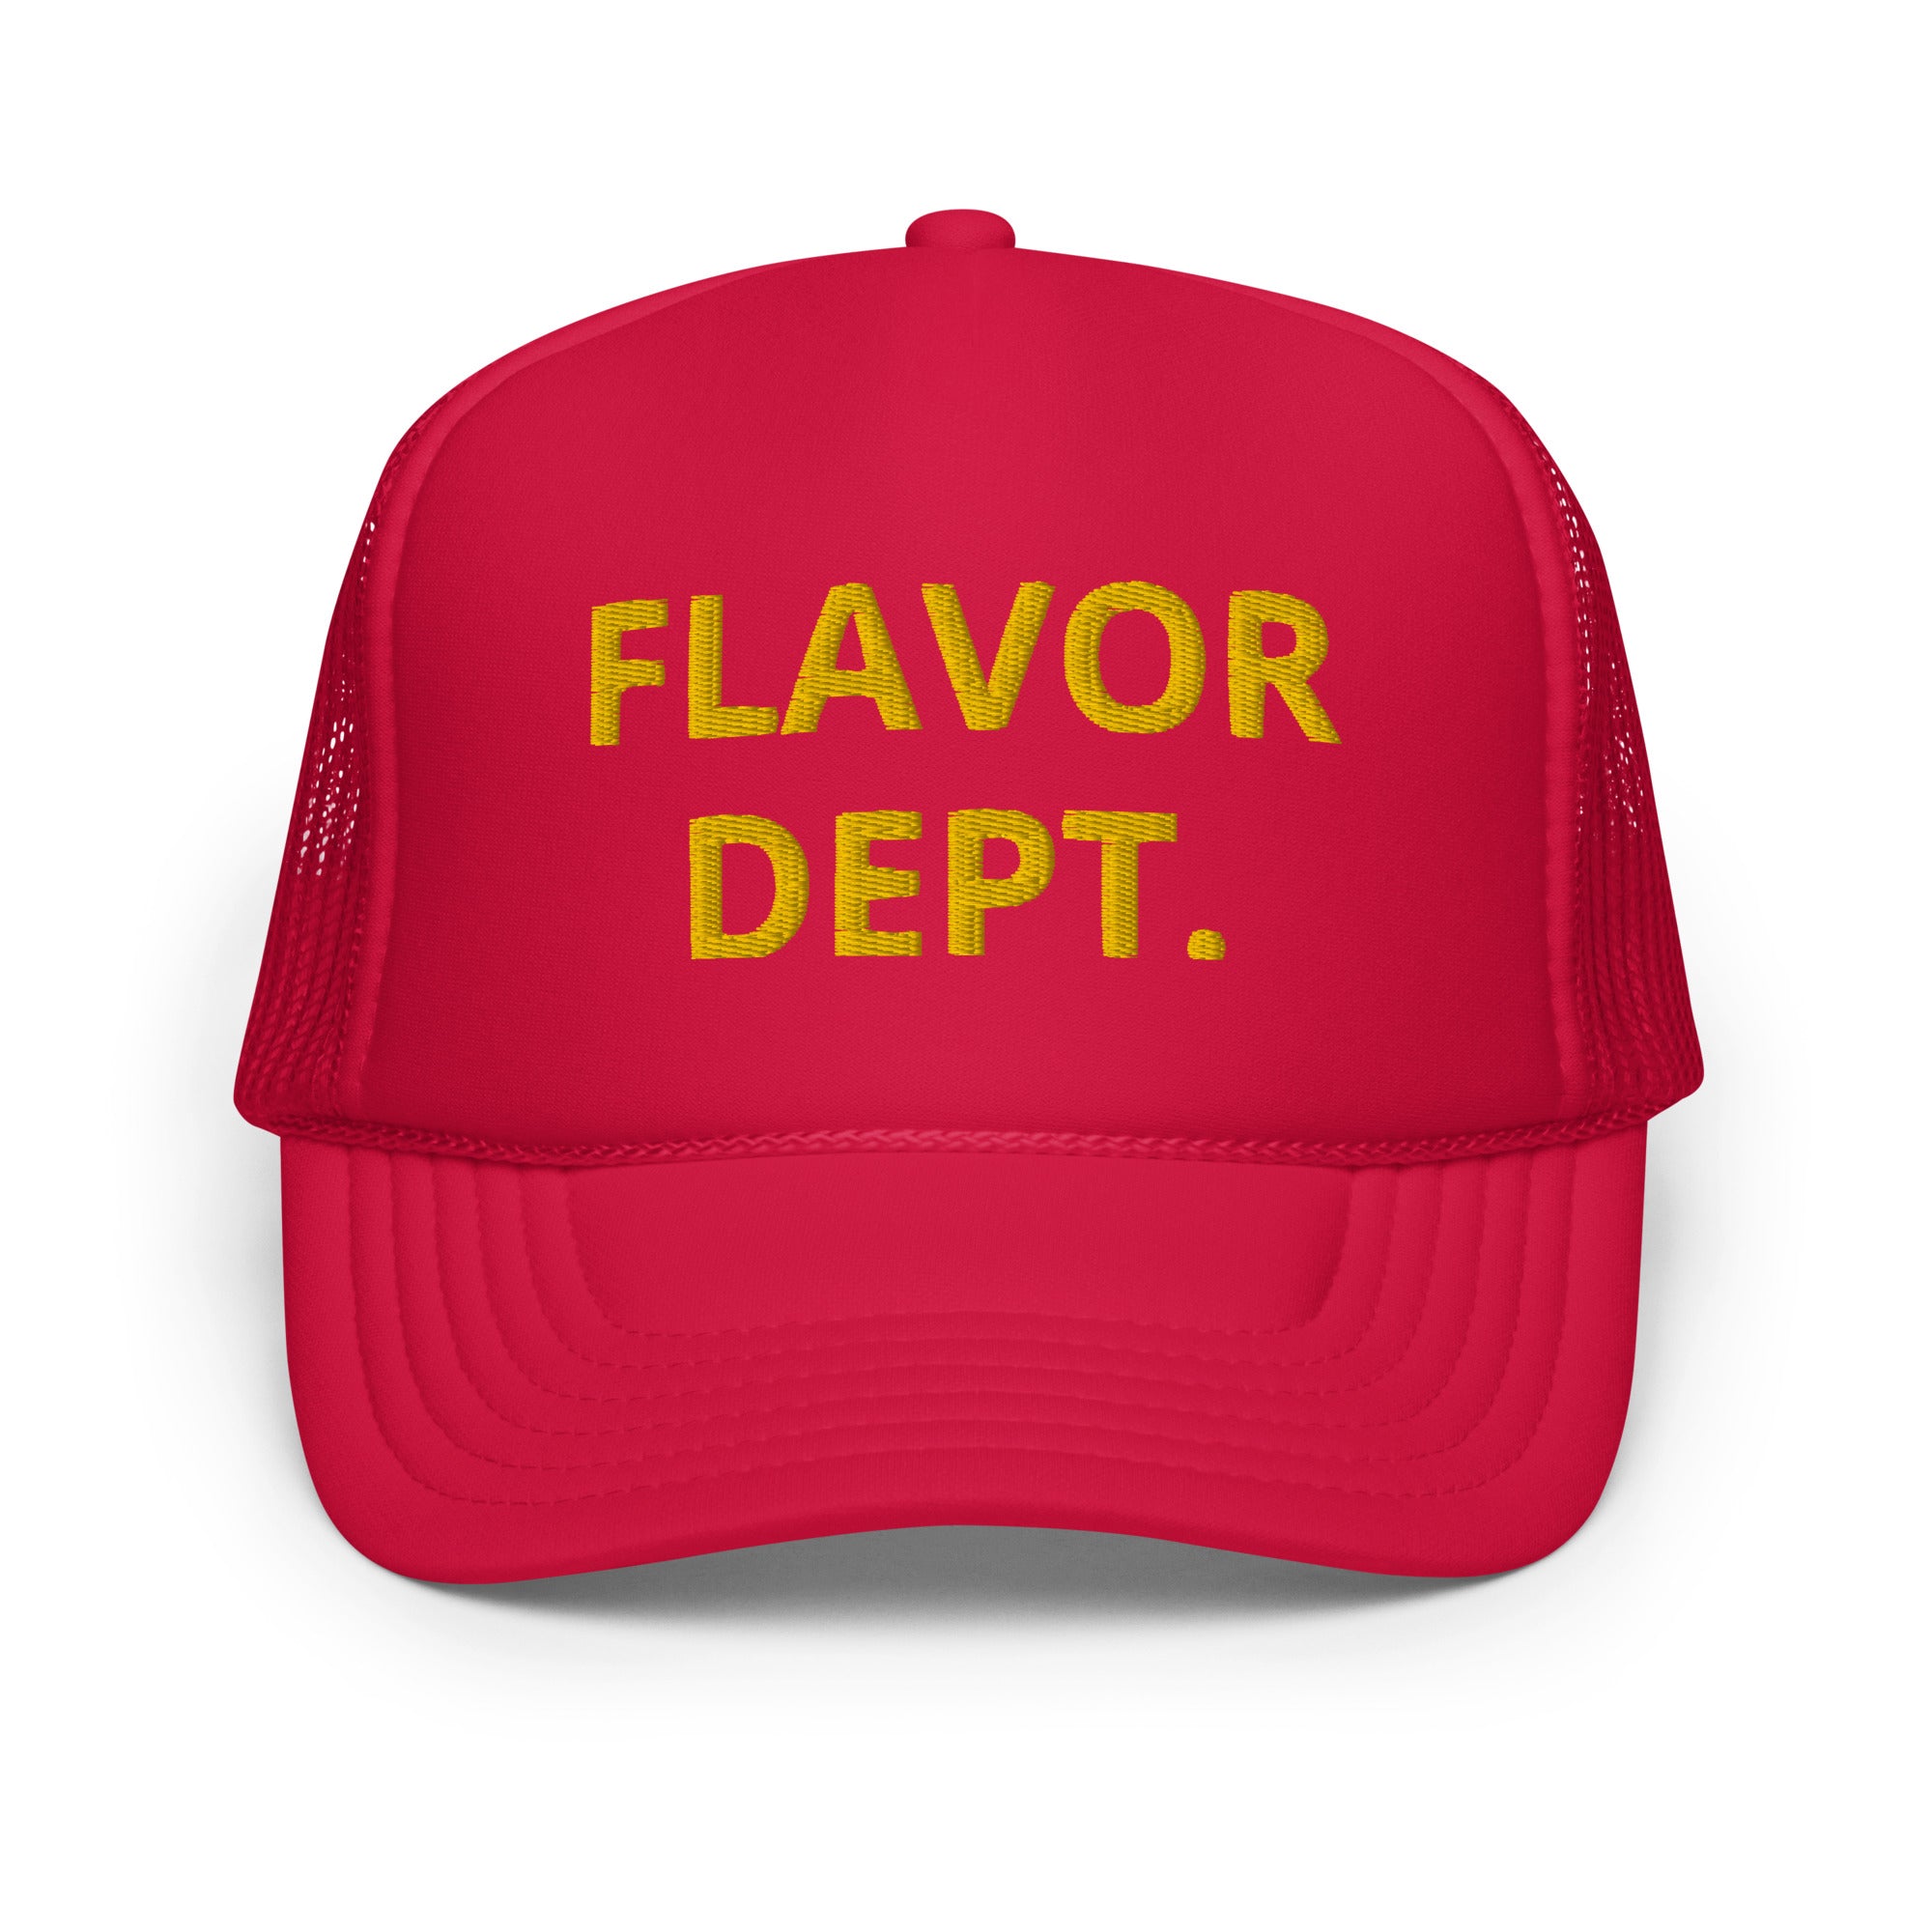 Flavor Dept. Trucker Hat